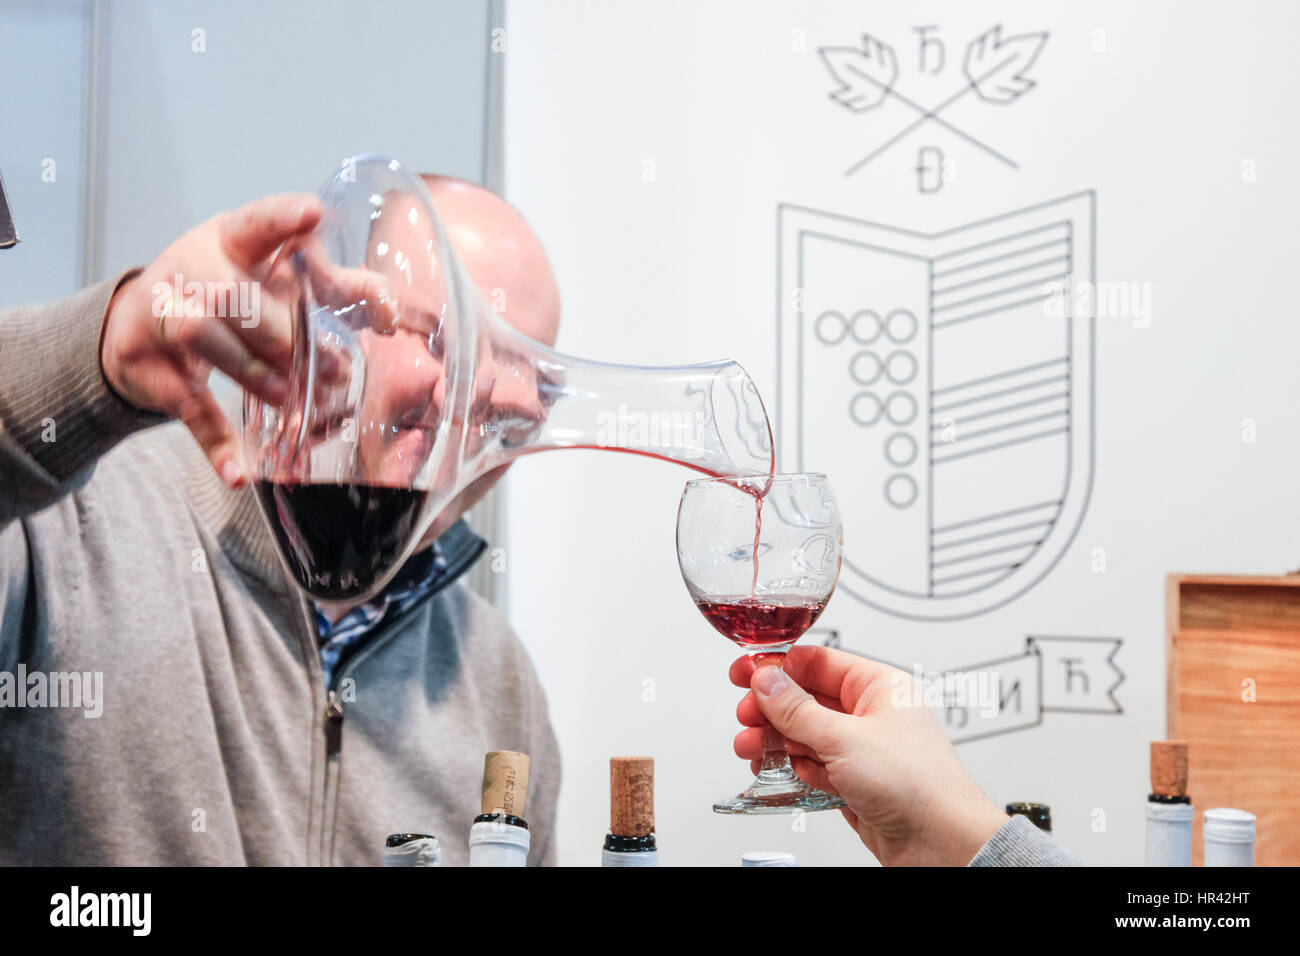 A Belgrado, in Serbia - febbraio 25, 2017: vino rosso che viene versato in un bicchiere per un assaggio di vino durante il 2017 Belgrado fiera turistica foto di un rosso wi Foto Stock